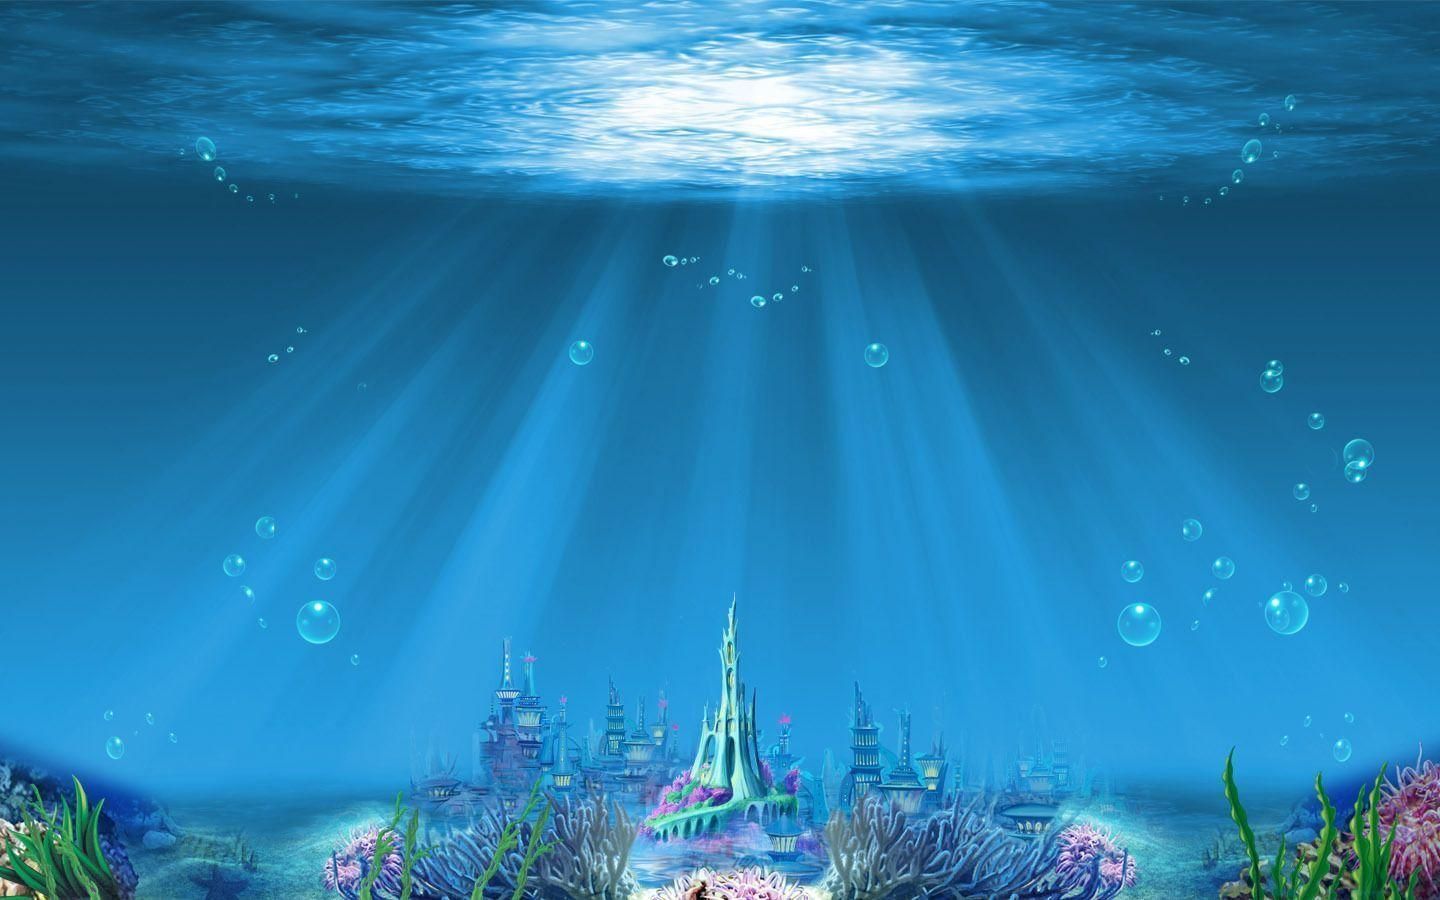 Mermaid kingdom #mermaids #castle #underwater #wallpaper